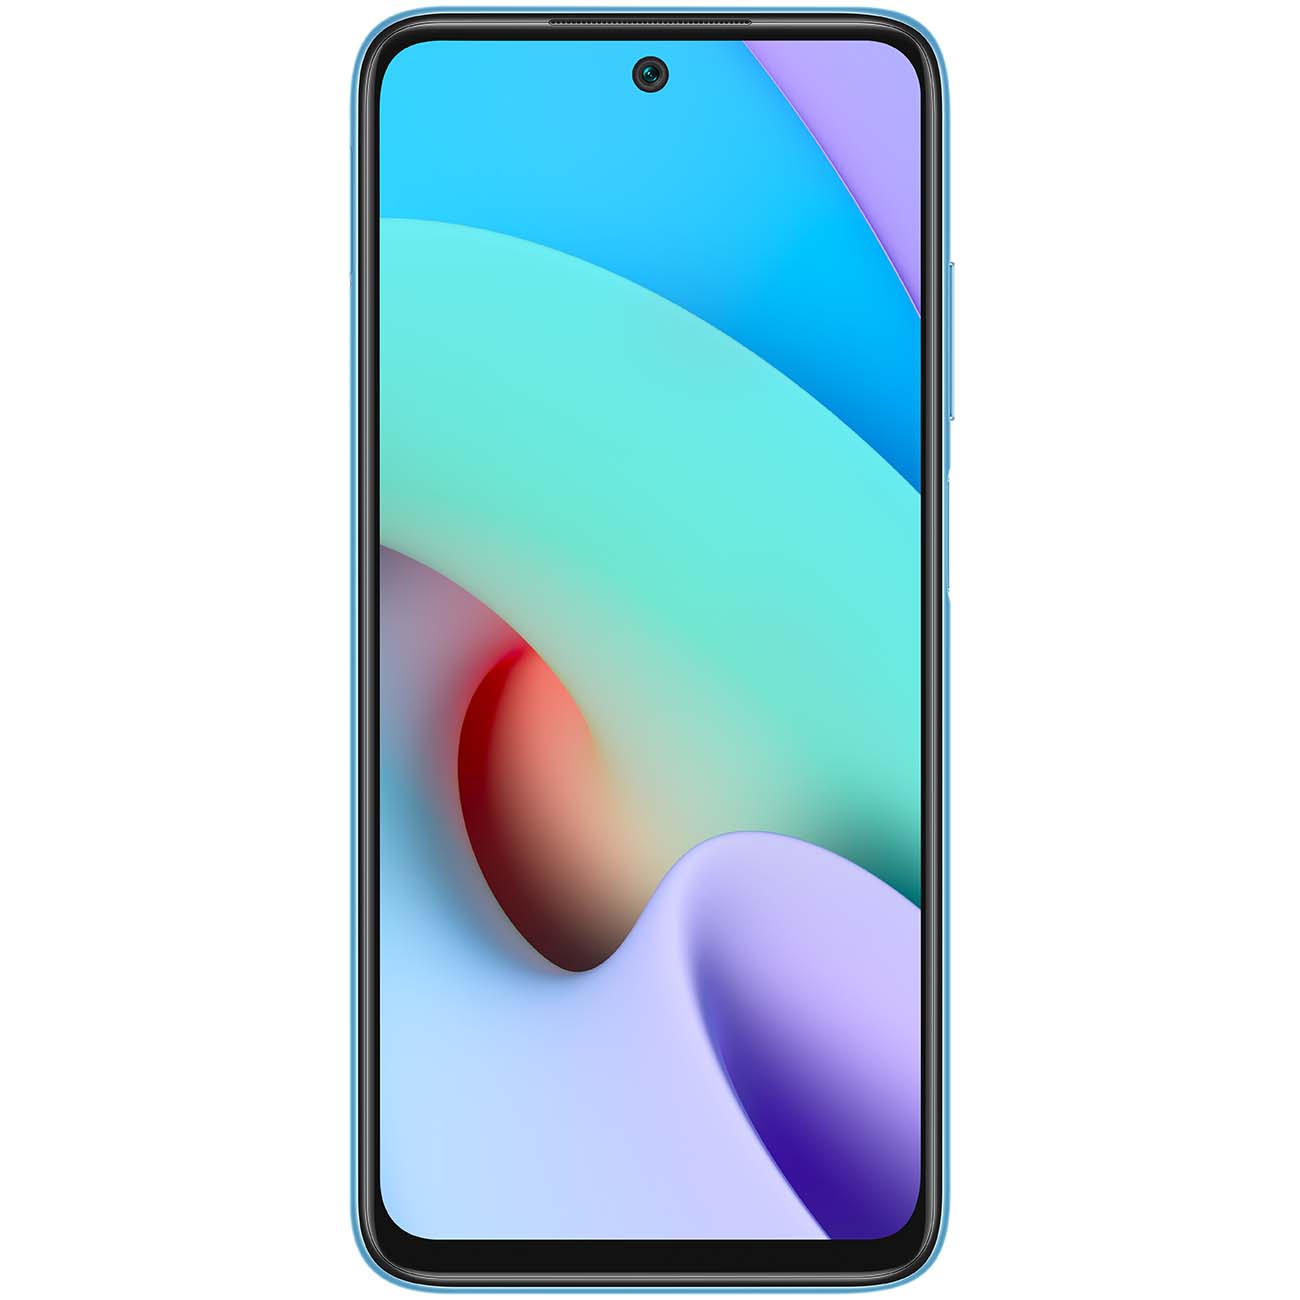 Купить смартфон xiaomi redmi 10 4+128gb sea blue Смартфоны в официальном магазине Apple, Samsung, Xiaomi. iPixel.ru Купить, заказ, кредит, рассрочка, отзывы,  характеристики, цена,  фотографии, в подарок.